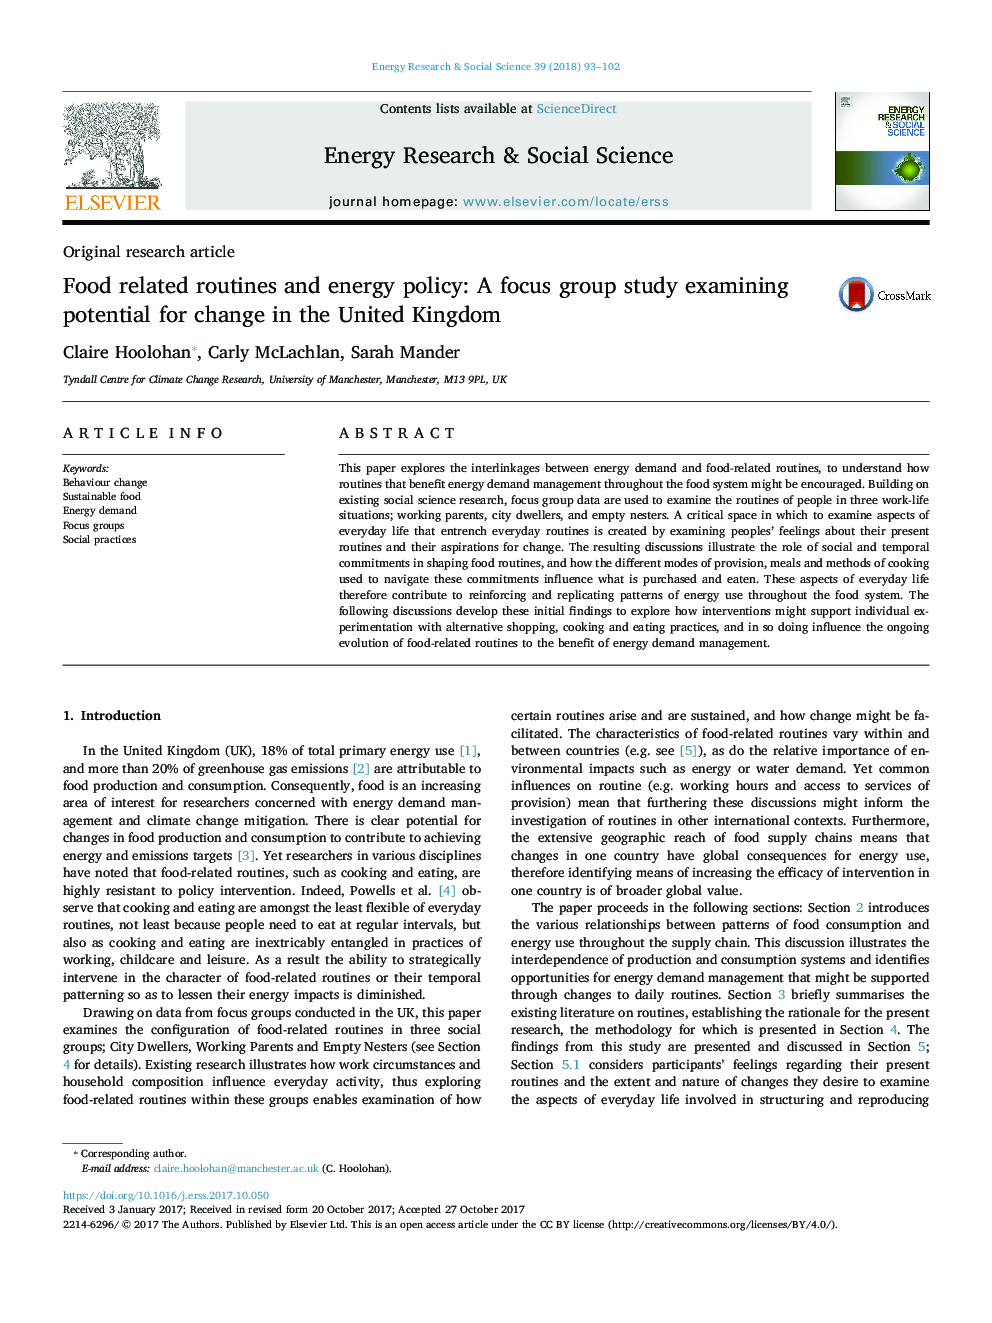 رویه های مربوط به غذا و سیاست انرژی: یک گروه تمرکز مطالعه برای بررسی تغییرات در انگلستان 